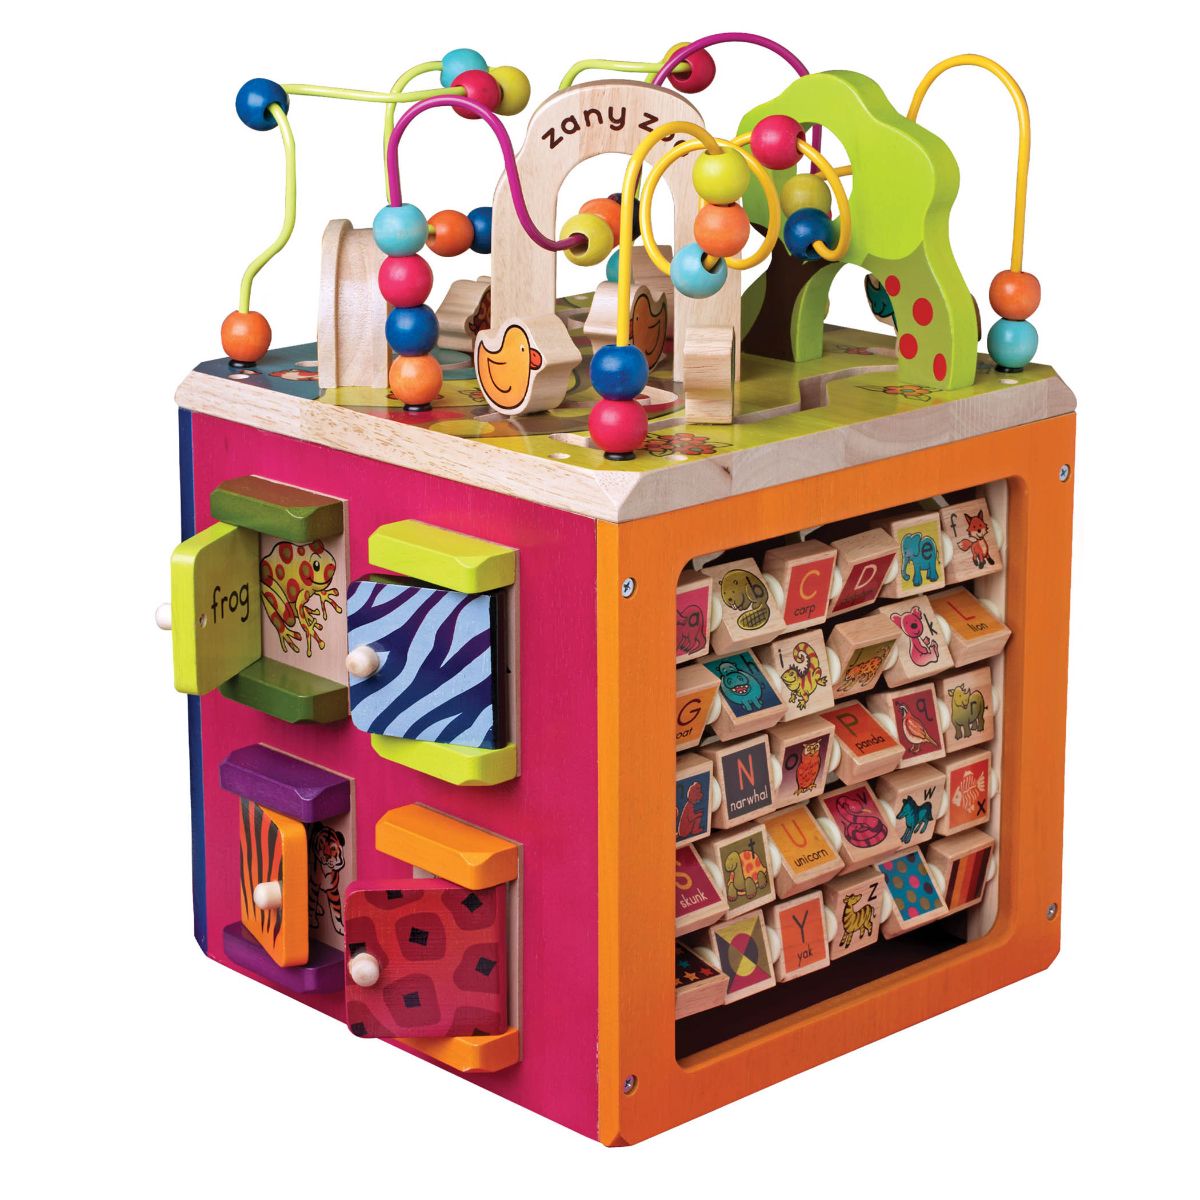 Zany Zoo | Wooden Activity Cube | B. toys